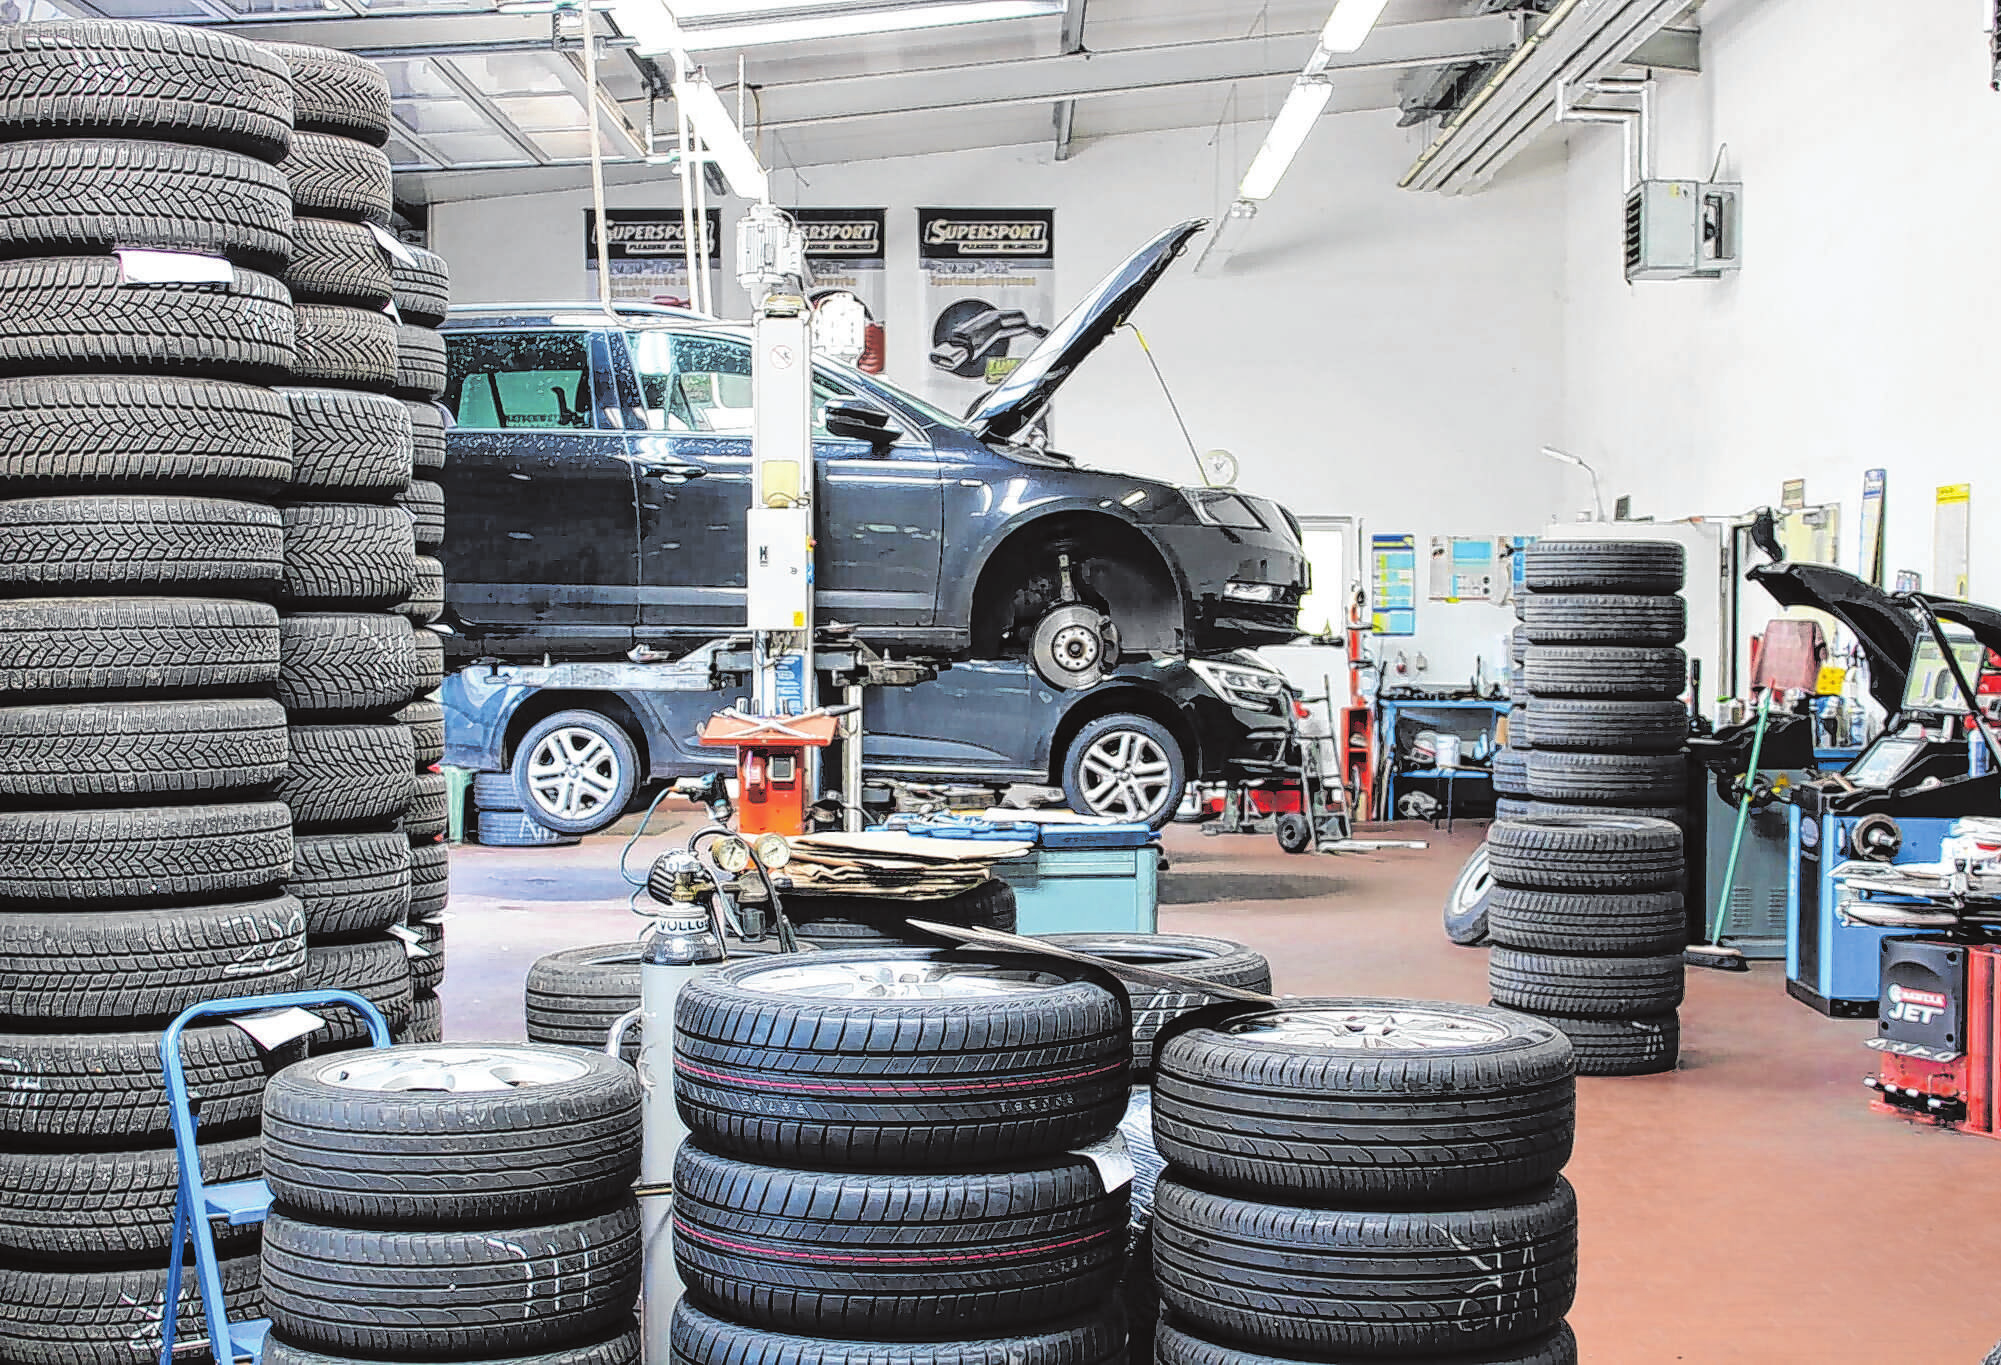 Blick in die Werkstatt: Reifen stehen für den Wechsel bereit.